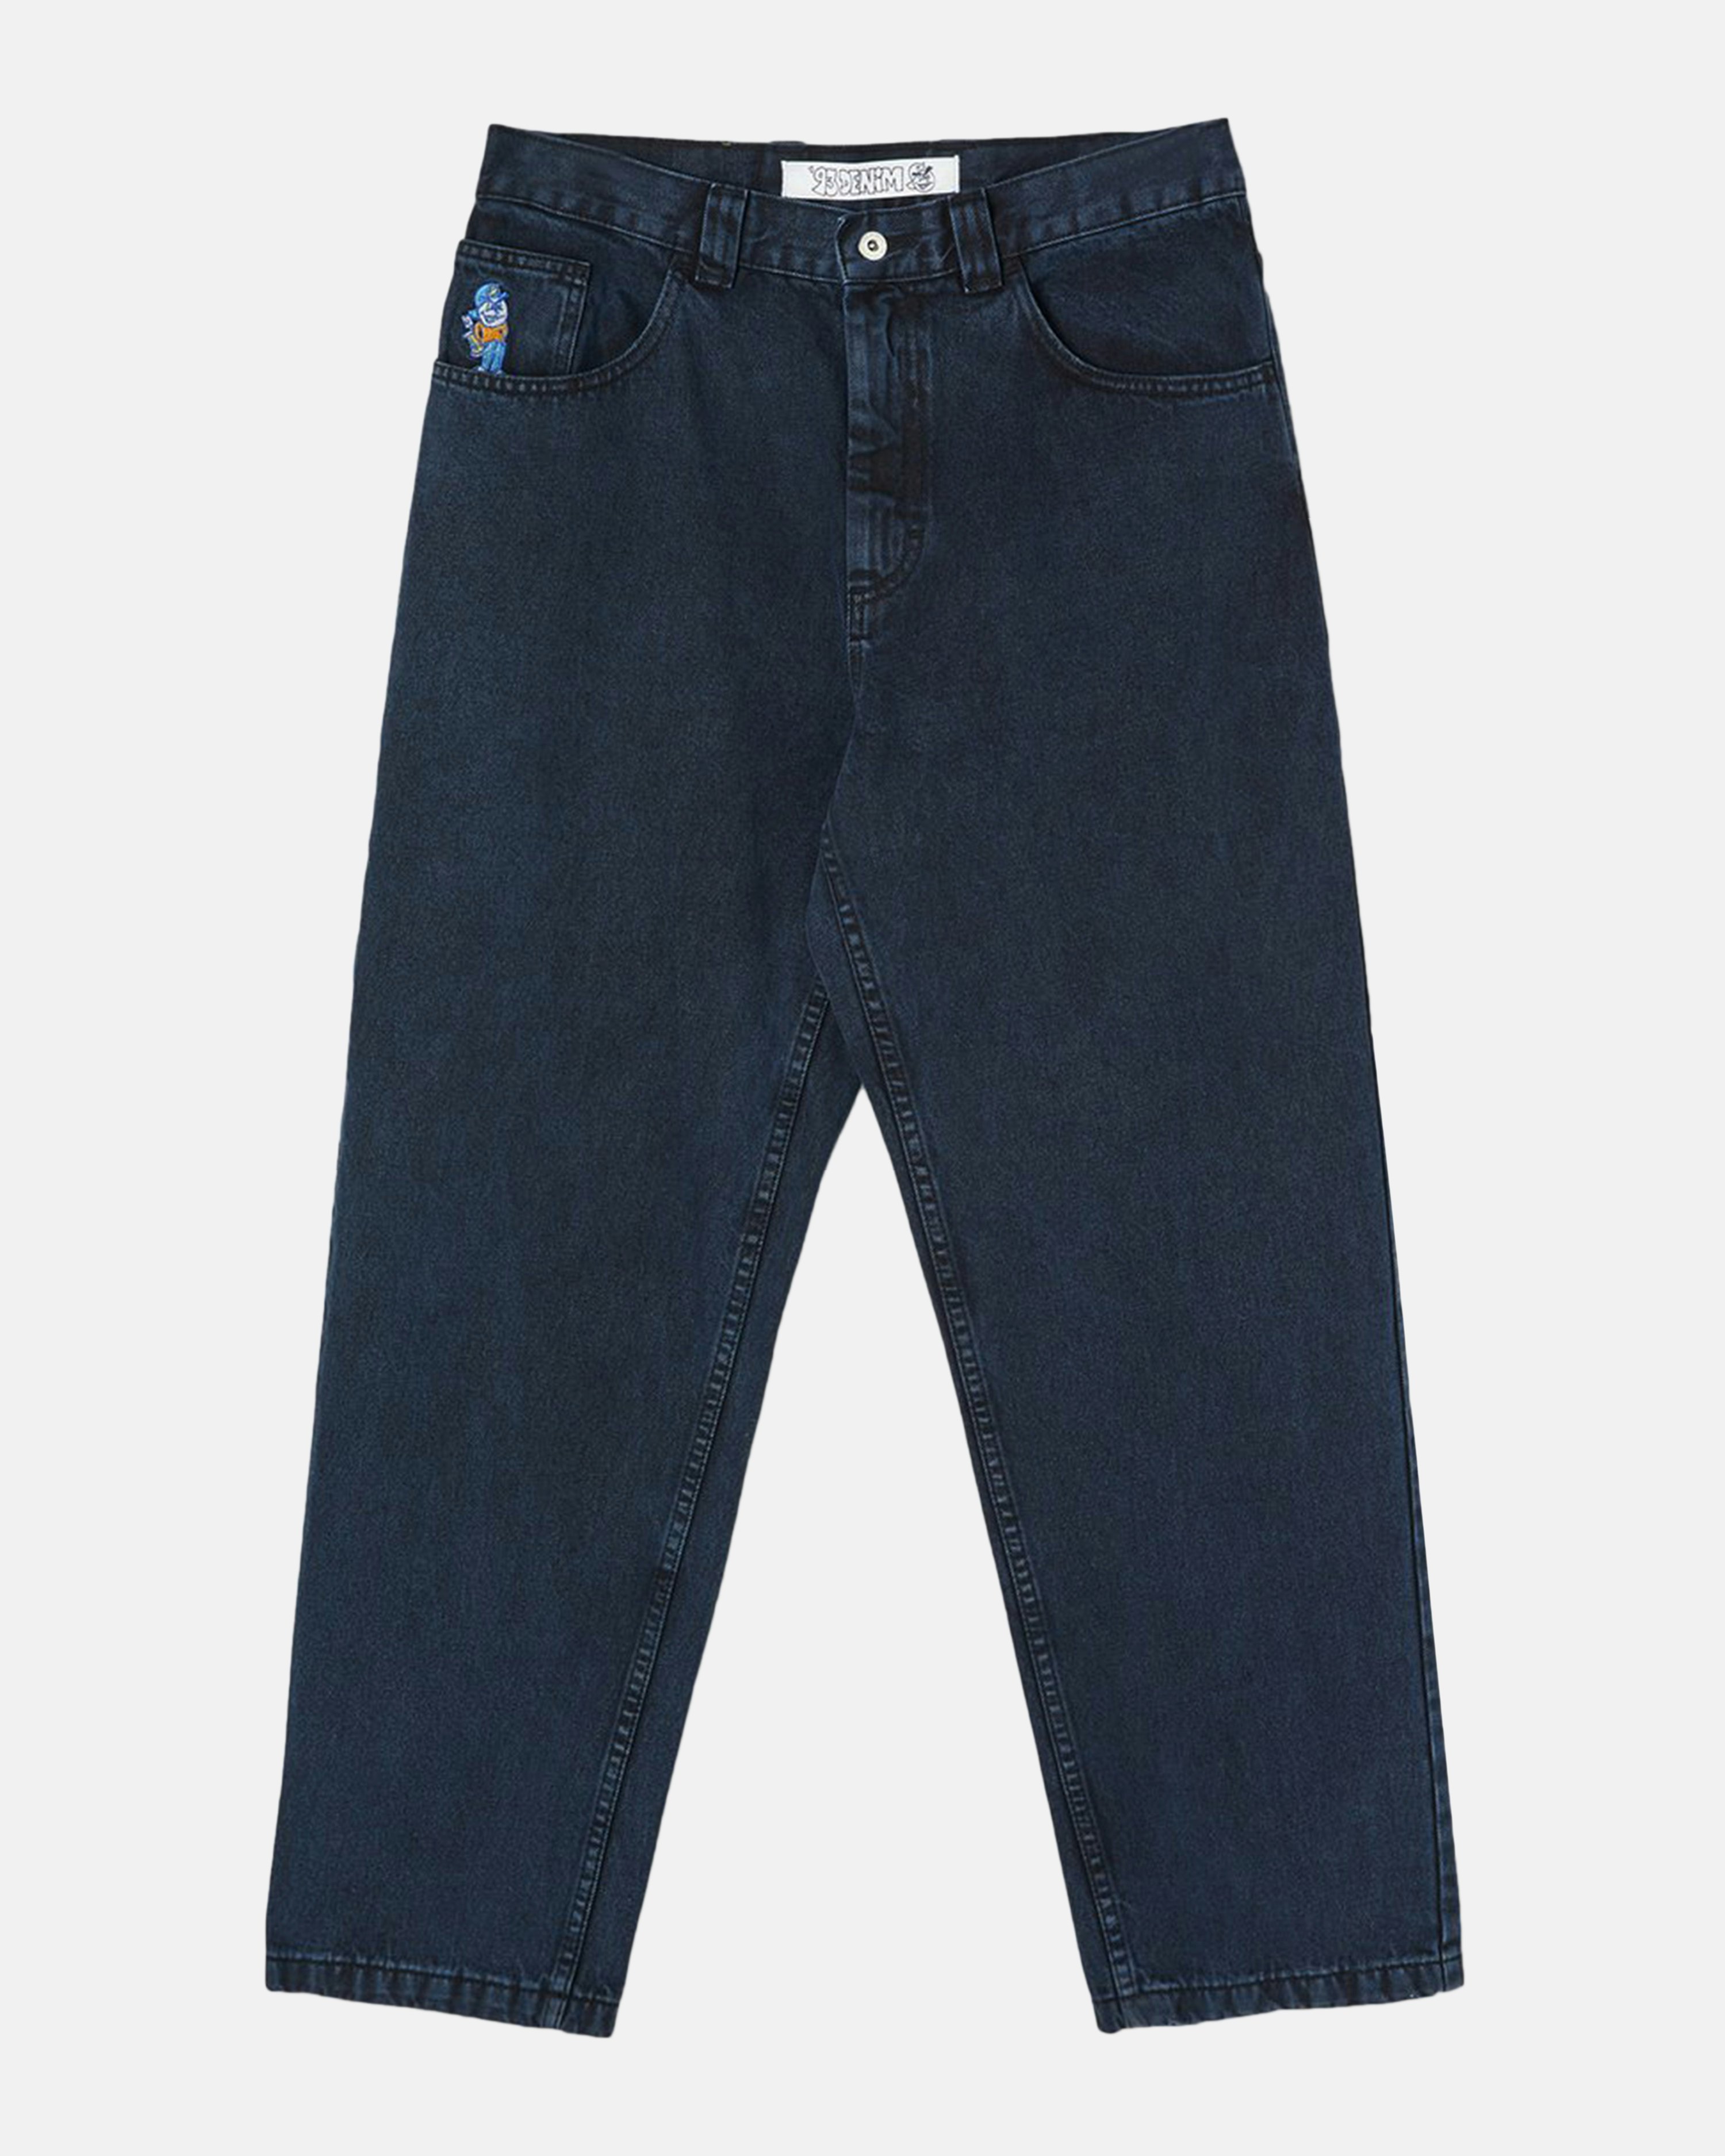 Polar Skate Co. Jeans - 93 Denim Blue | Men | Junkyard